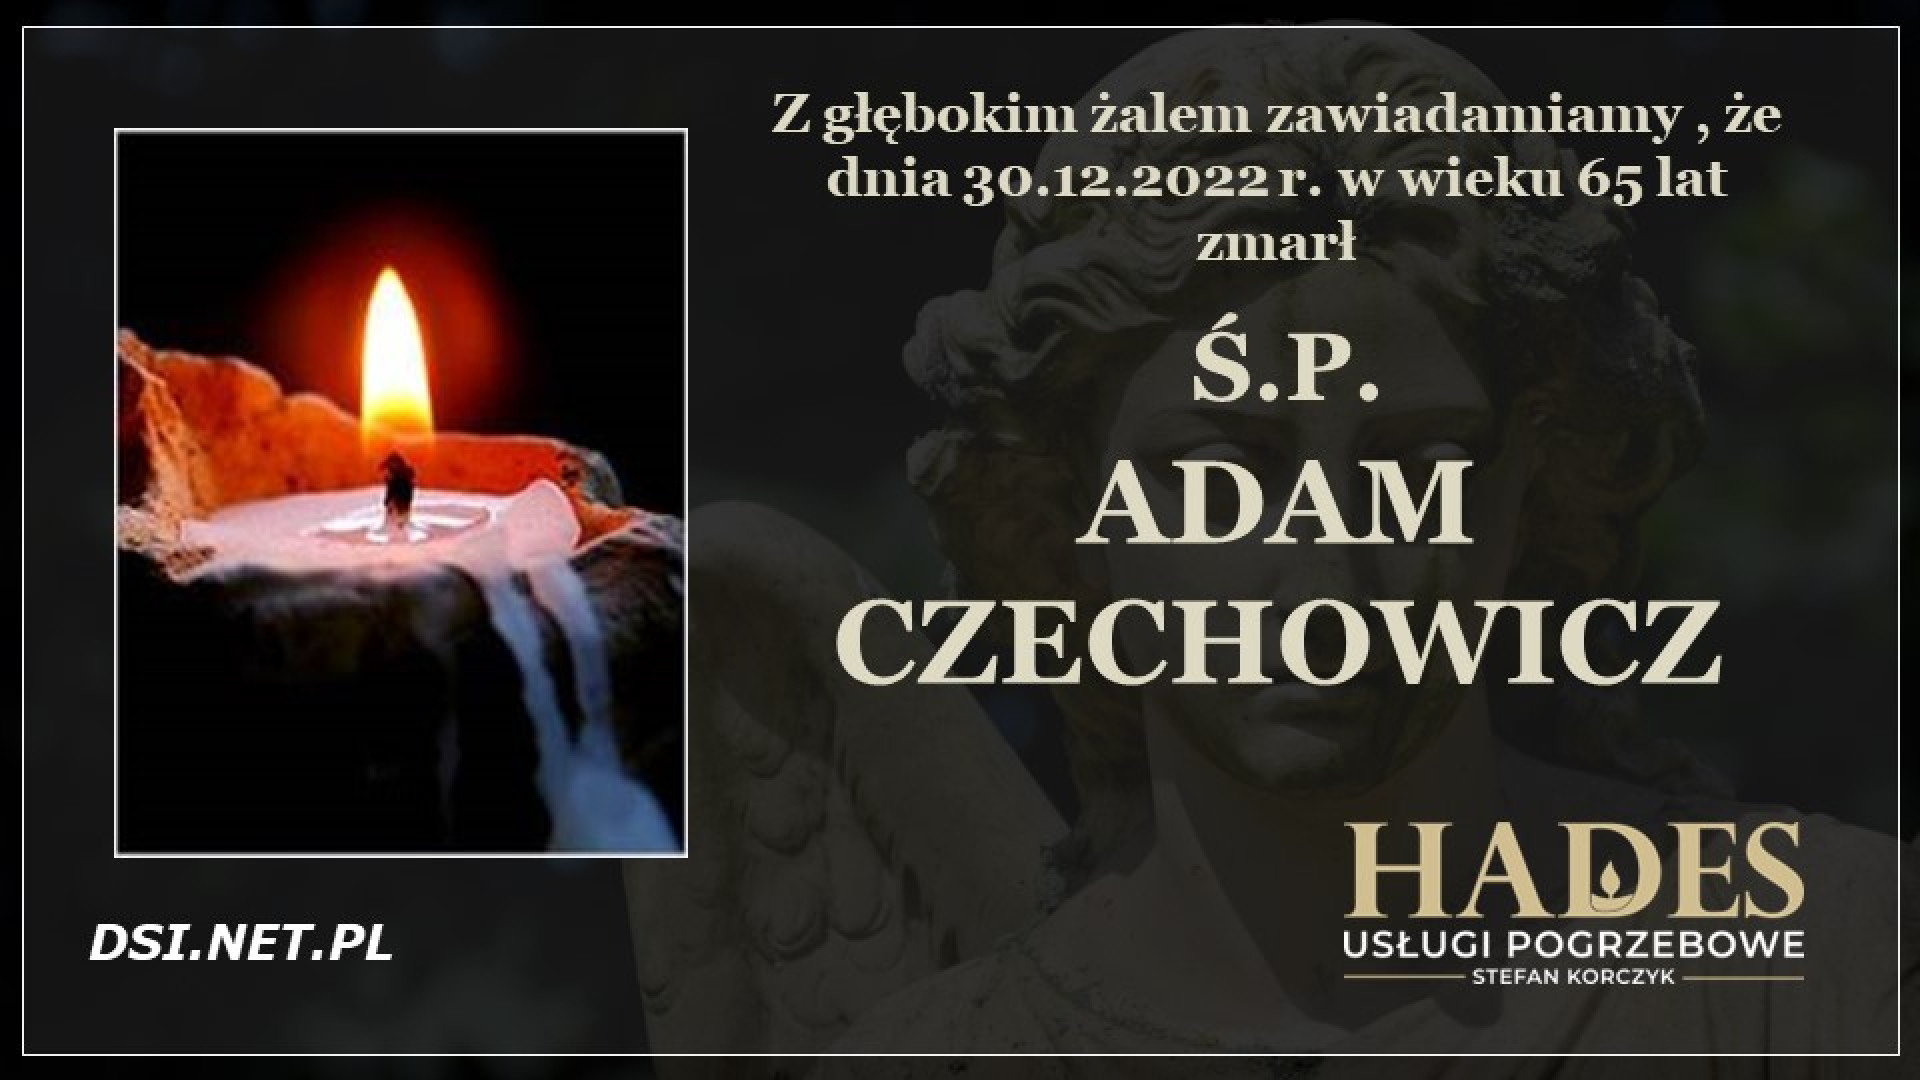 Ś.P. Adam Czechowicz